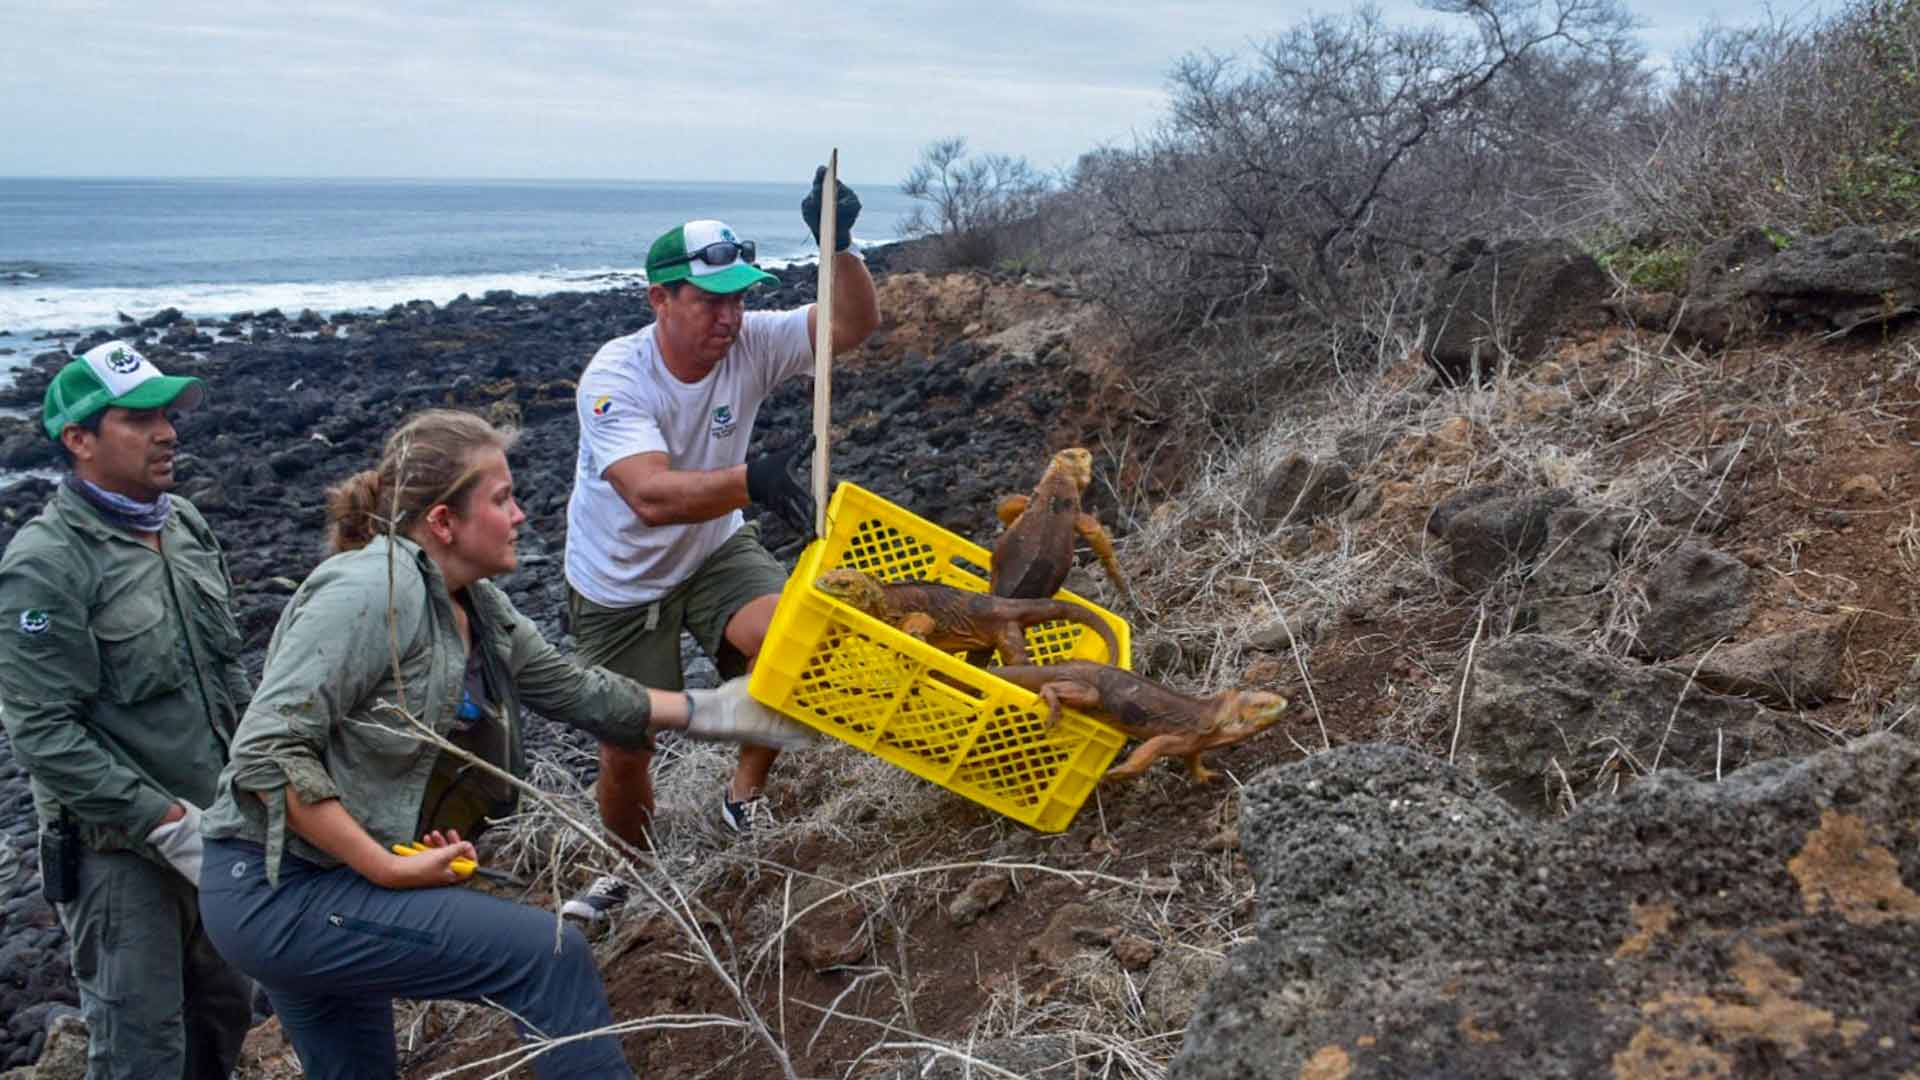 La reintroducción de iguanas ayudará a recuperar el ecosistema de las Islas Galápagos